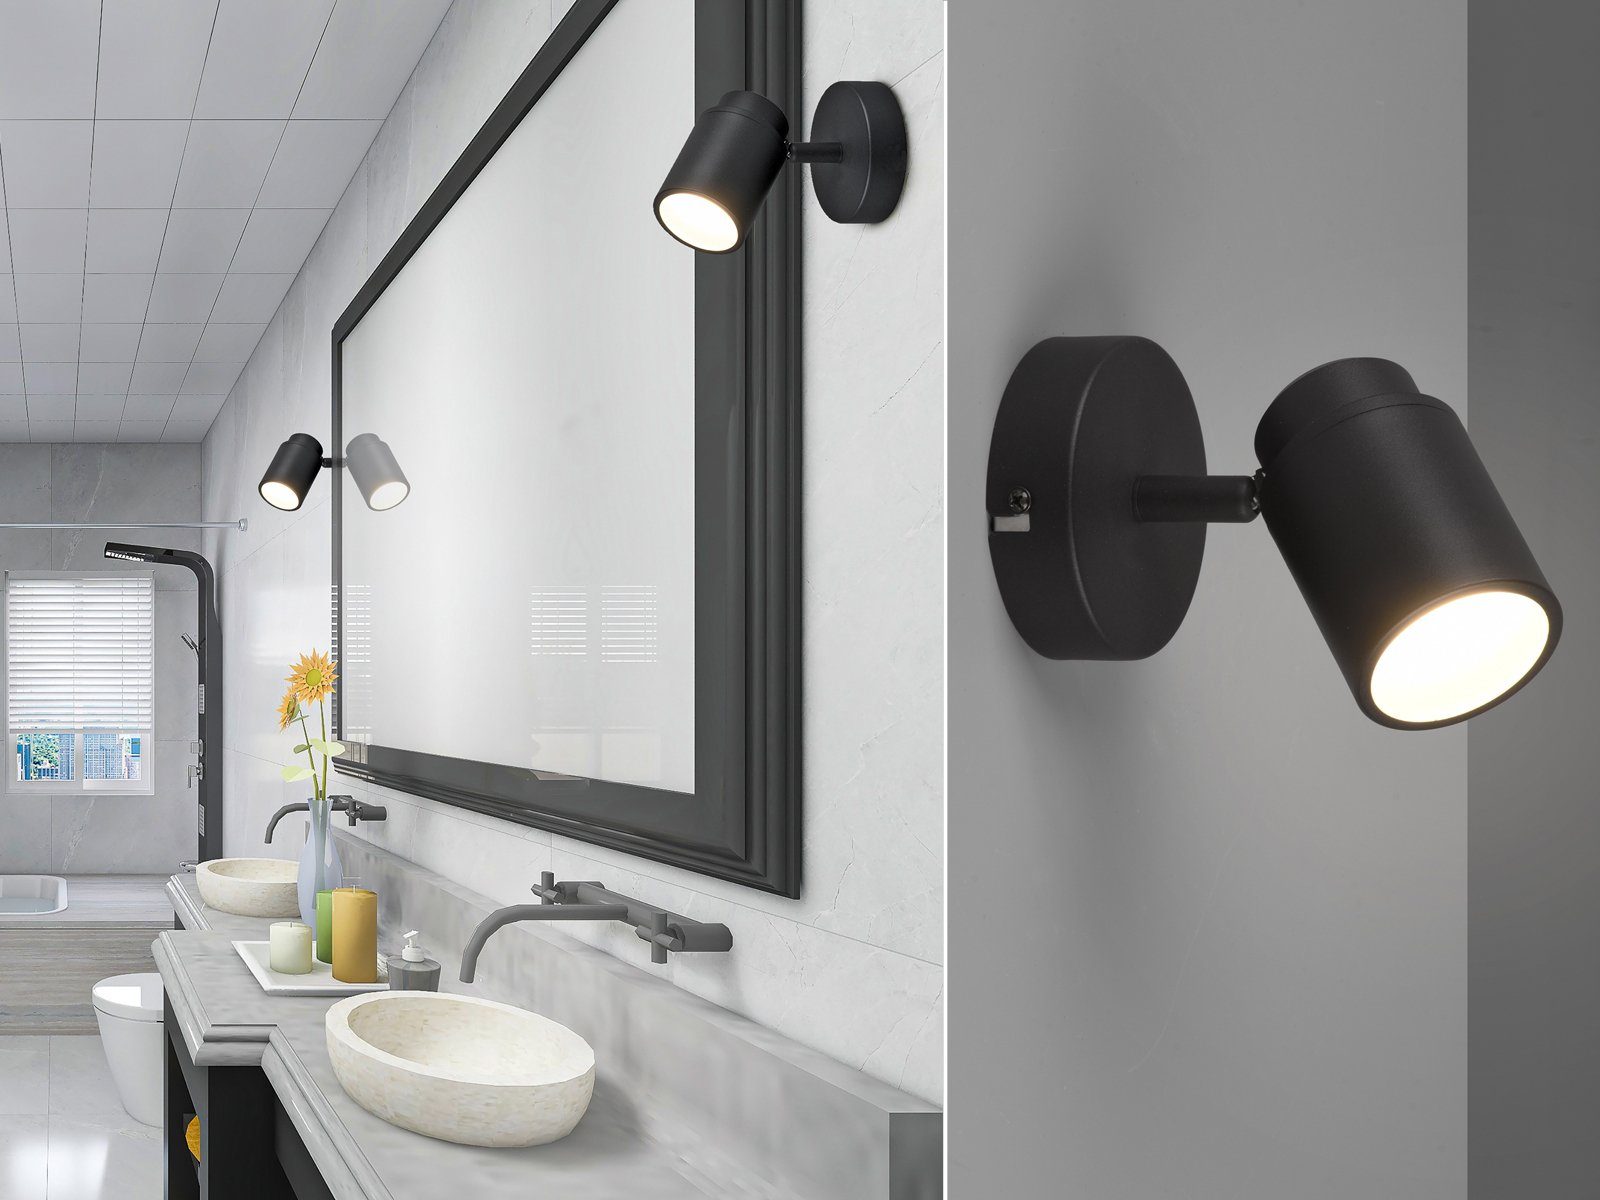 Design LED Wand Glas Strahler Leuchte Bade Zimmer Spiegel Lampe schwenkbar 